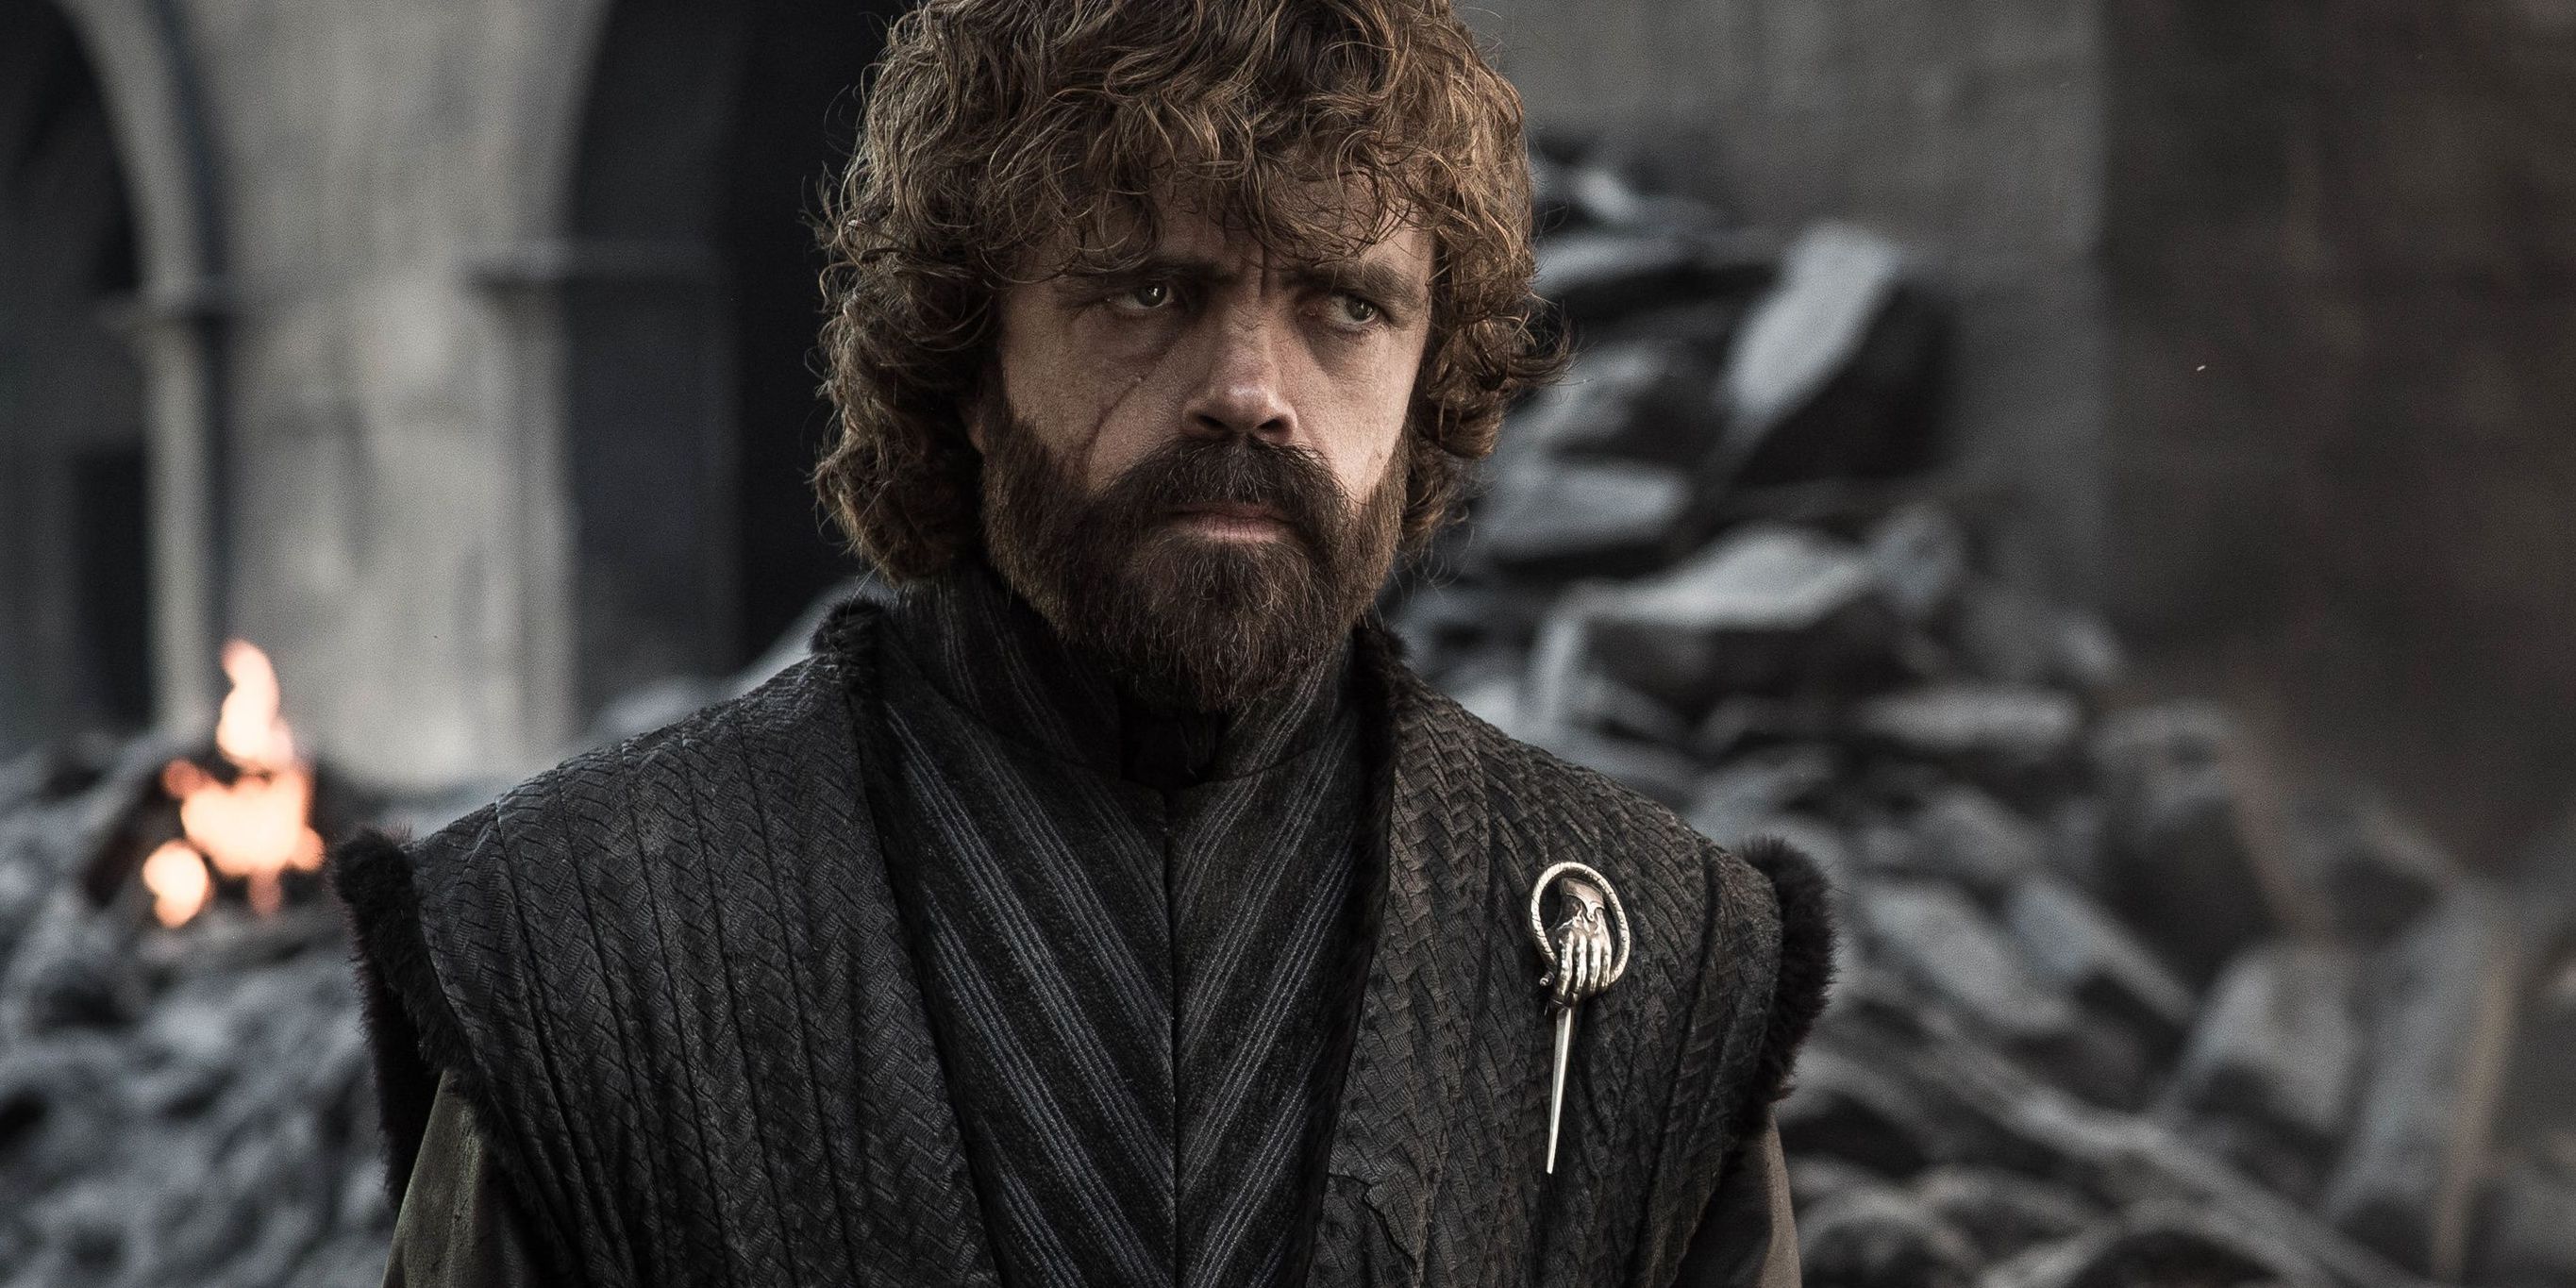 Tyrion Lannister after the destruction of King's Landing